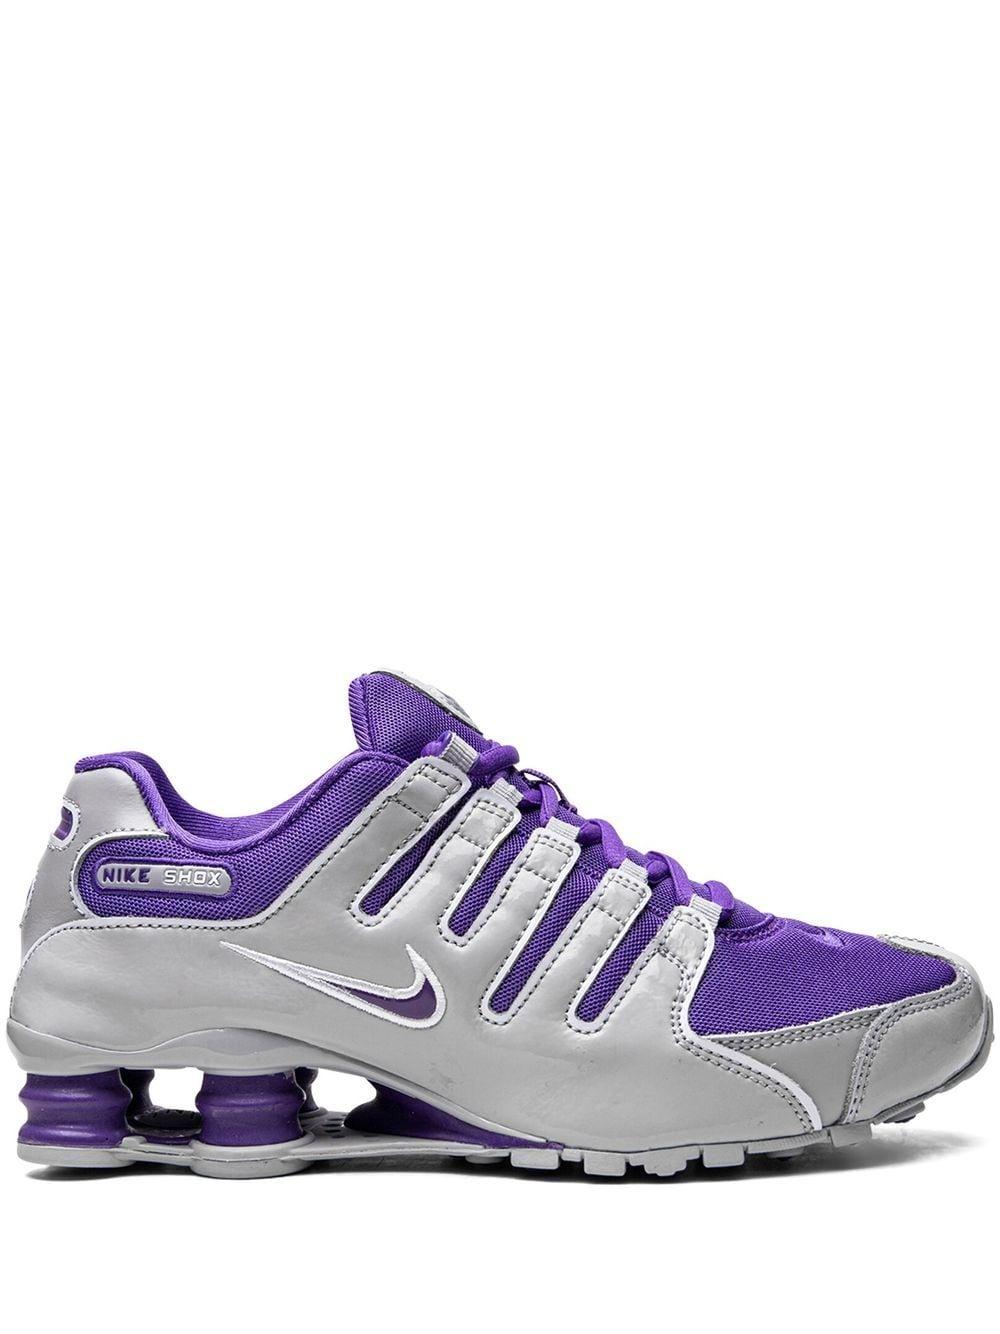 Nike Shox Nz Low-top Sneakers in Purple | Lyst